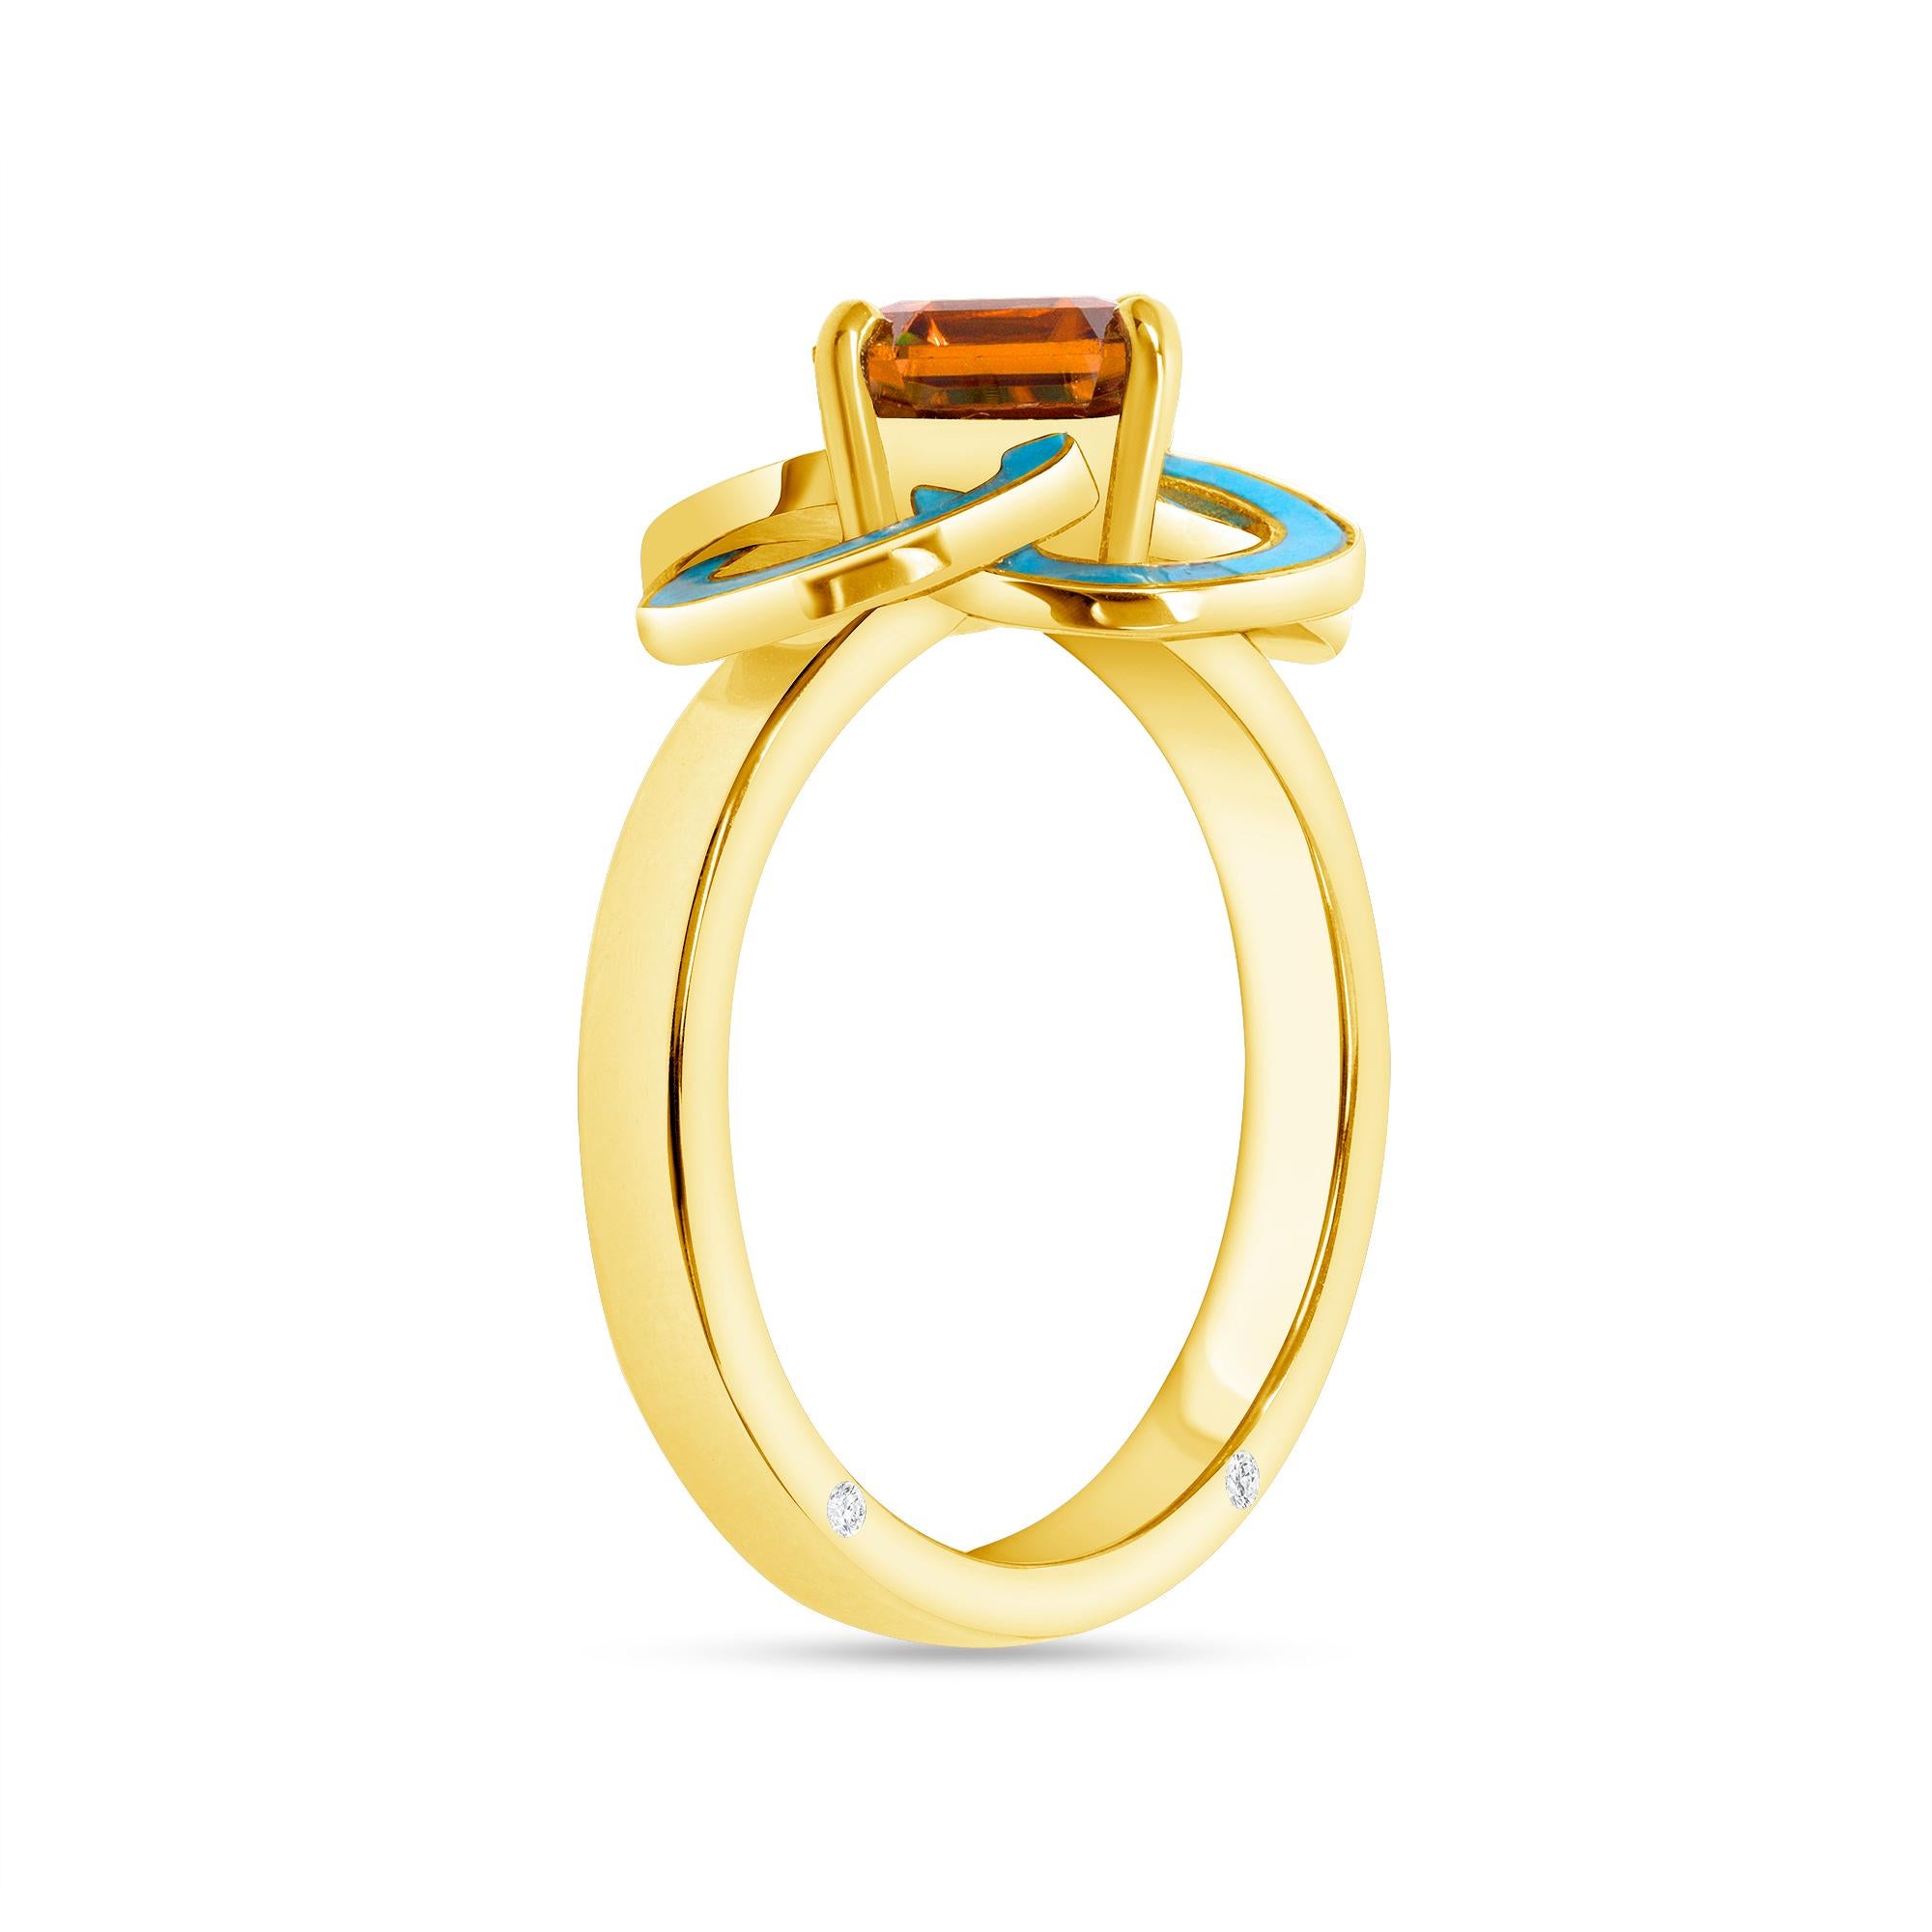 2,56 Karat Orange Zirkon, Türkis, Diamant, Gelbgold Cocktail Ring, Auf Lager. Dieser abstrakte Ring hat ein Band und eine Fassung aus 18 Karat Gelbgold. Es hat geometrische Spiralen, die an keltische Muster erinnern. Diese Spiralen haben eine